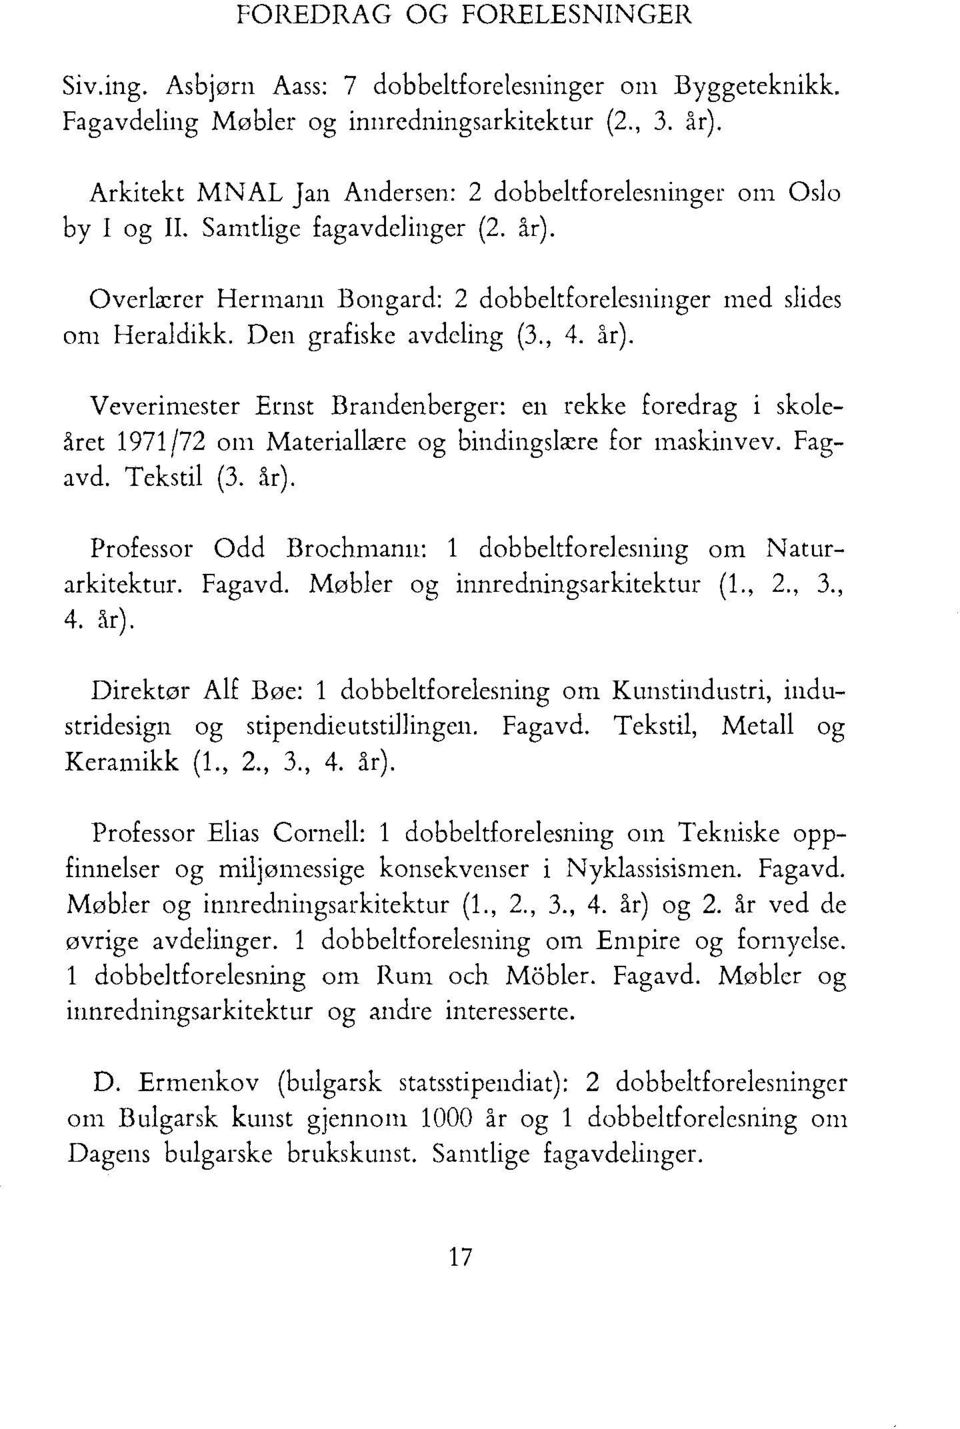 Den grafiske avdcling (3., 4. år). Veverimester Ernst Brandenberger: en rekke foredrag i skoleåret 1971/72 om Materiallære og bindingslære for maskinvev. Fagavd. Tekstil (3. år). Professor Odd Brochrnann: 1 dobbeltforelesning om Naturarkitektur.